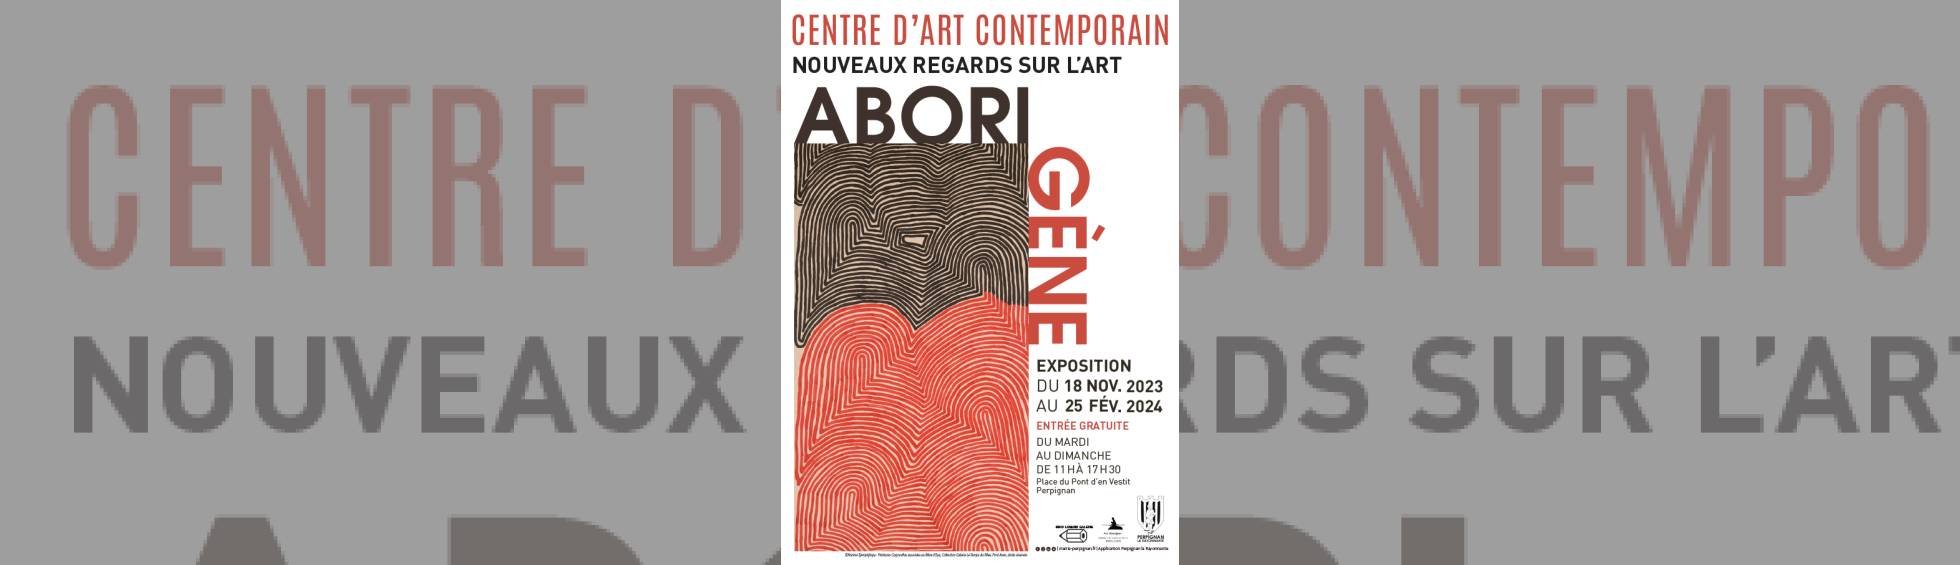 Exposition "Abori Gène" -Nouveaux regards sur l'art